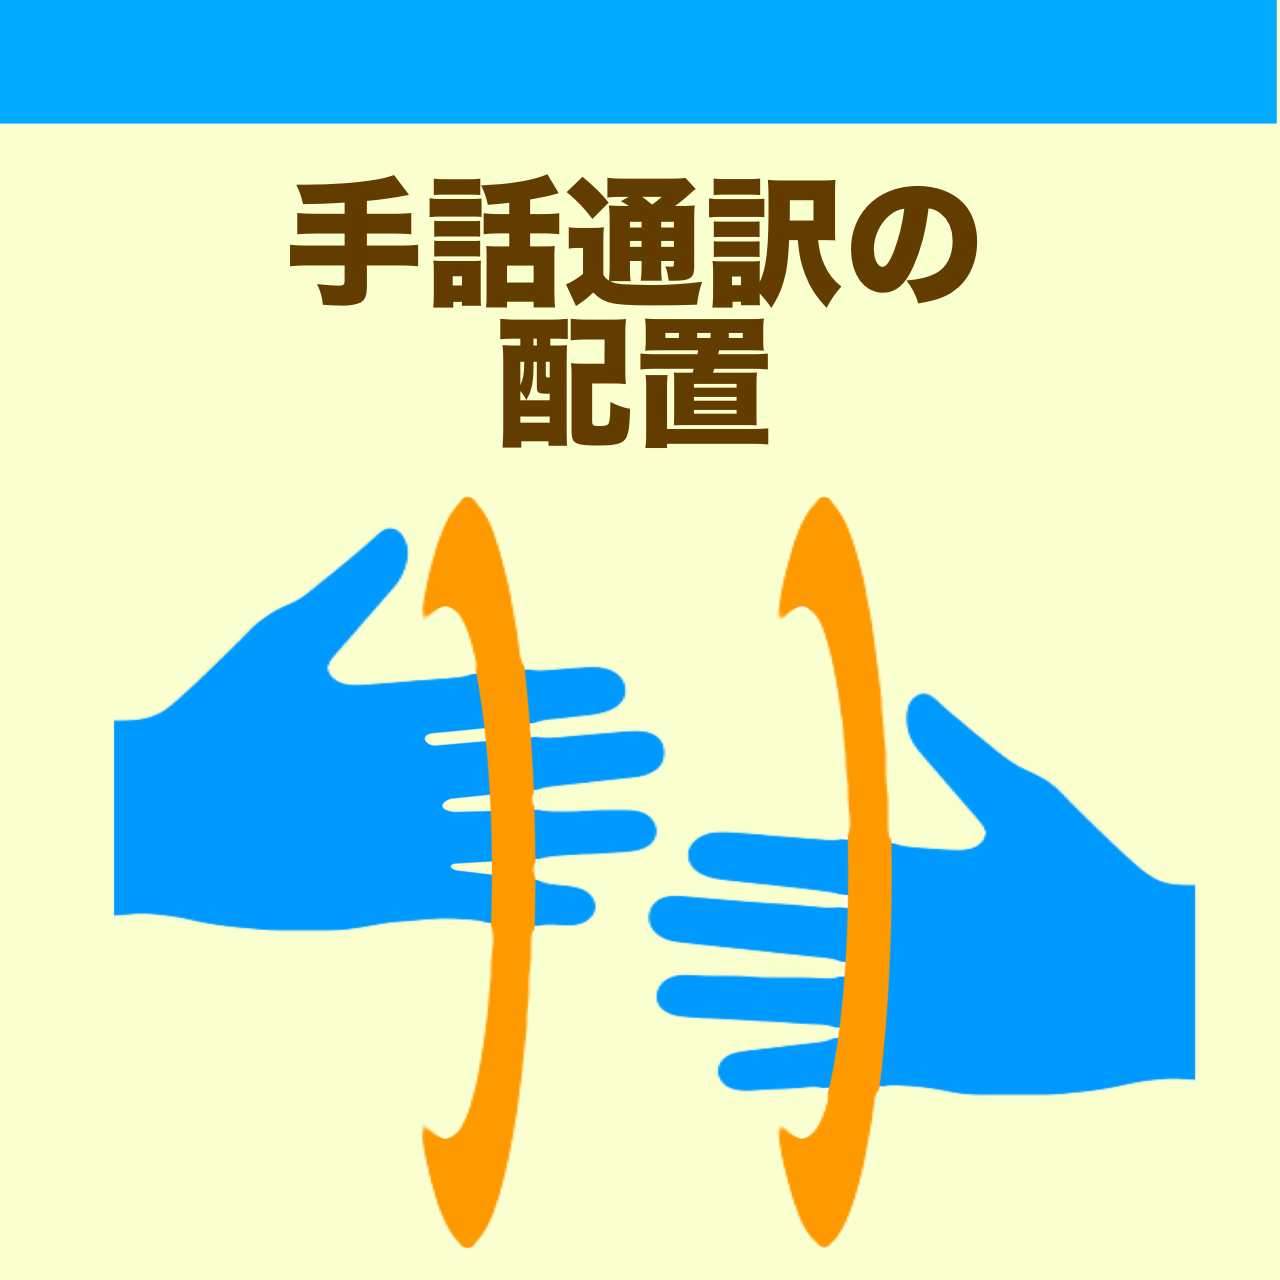 "手話通訳の配置